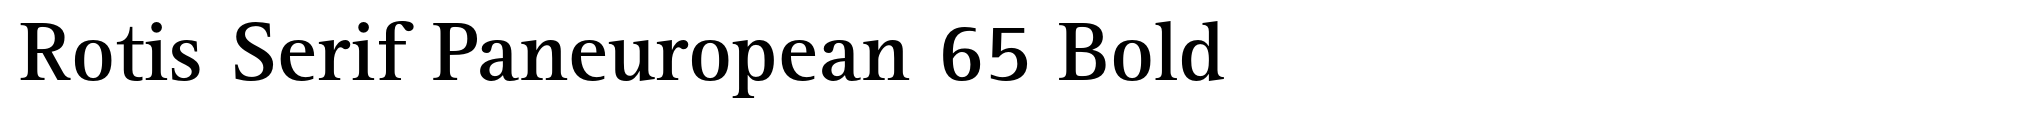 Rotis Serif Paneuropean 65 Bold image